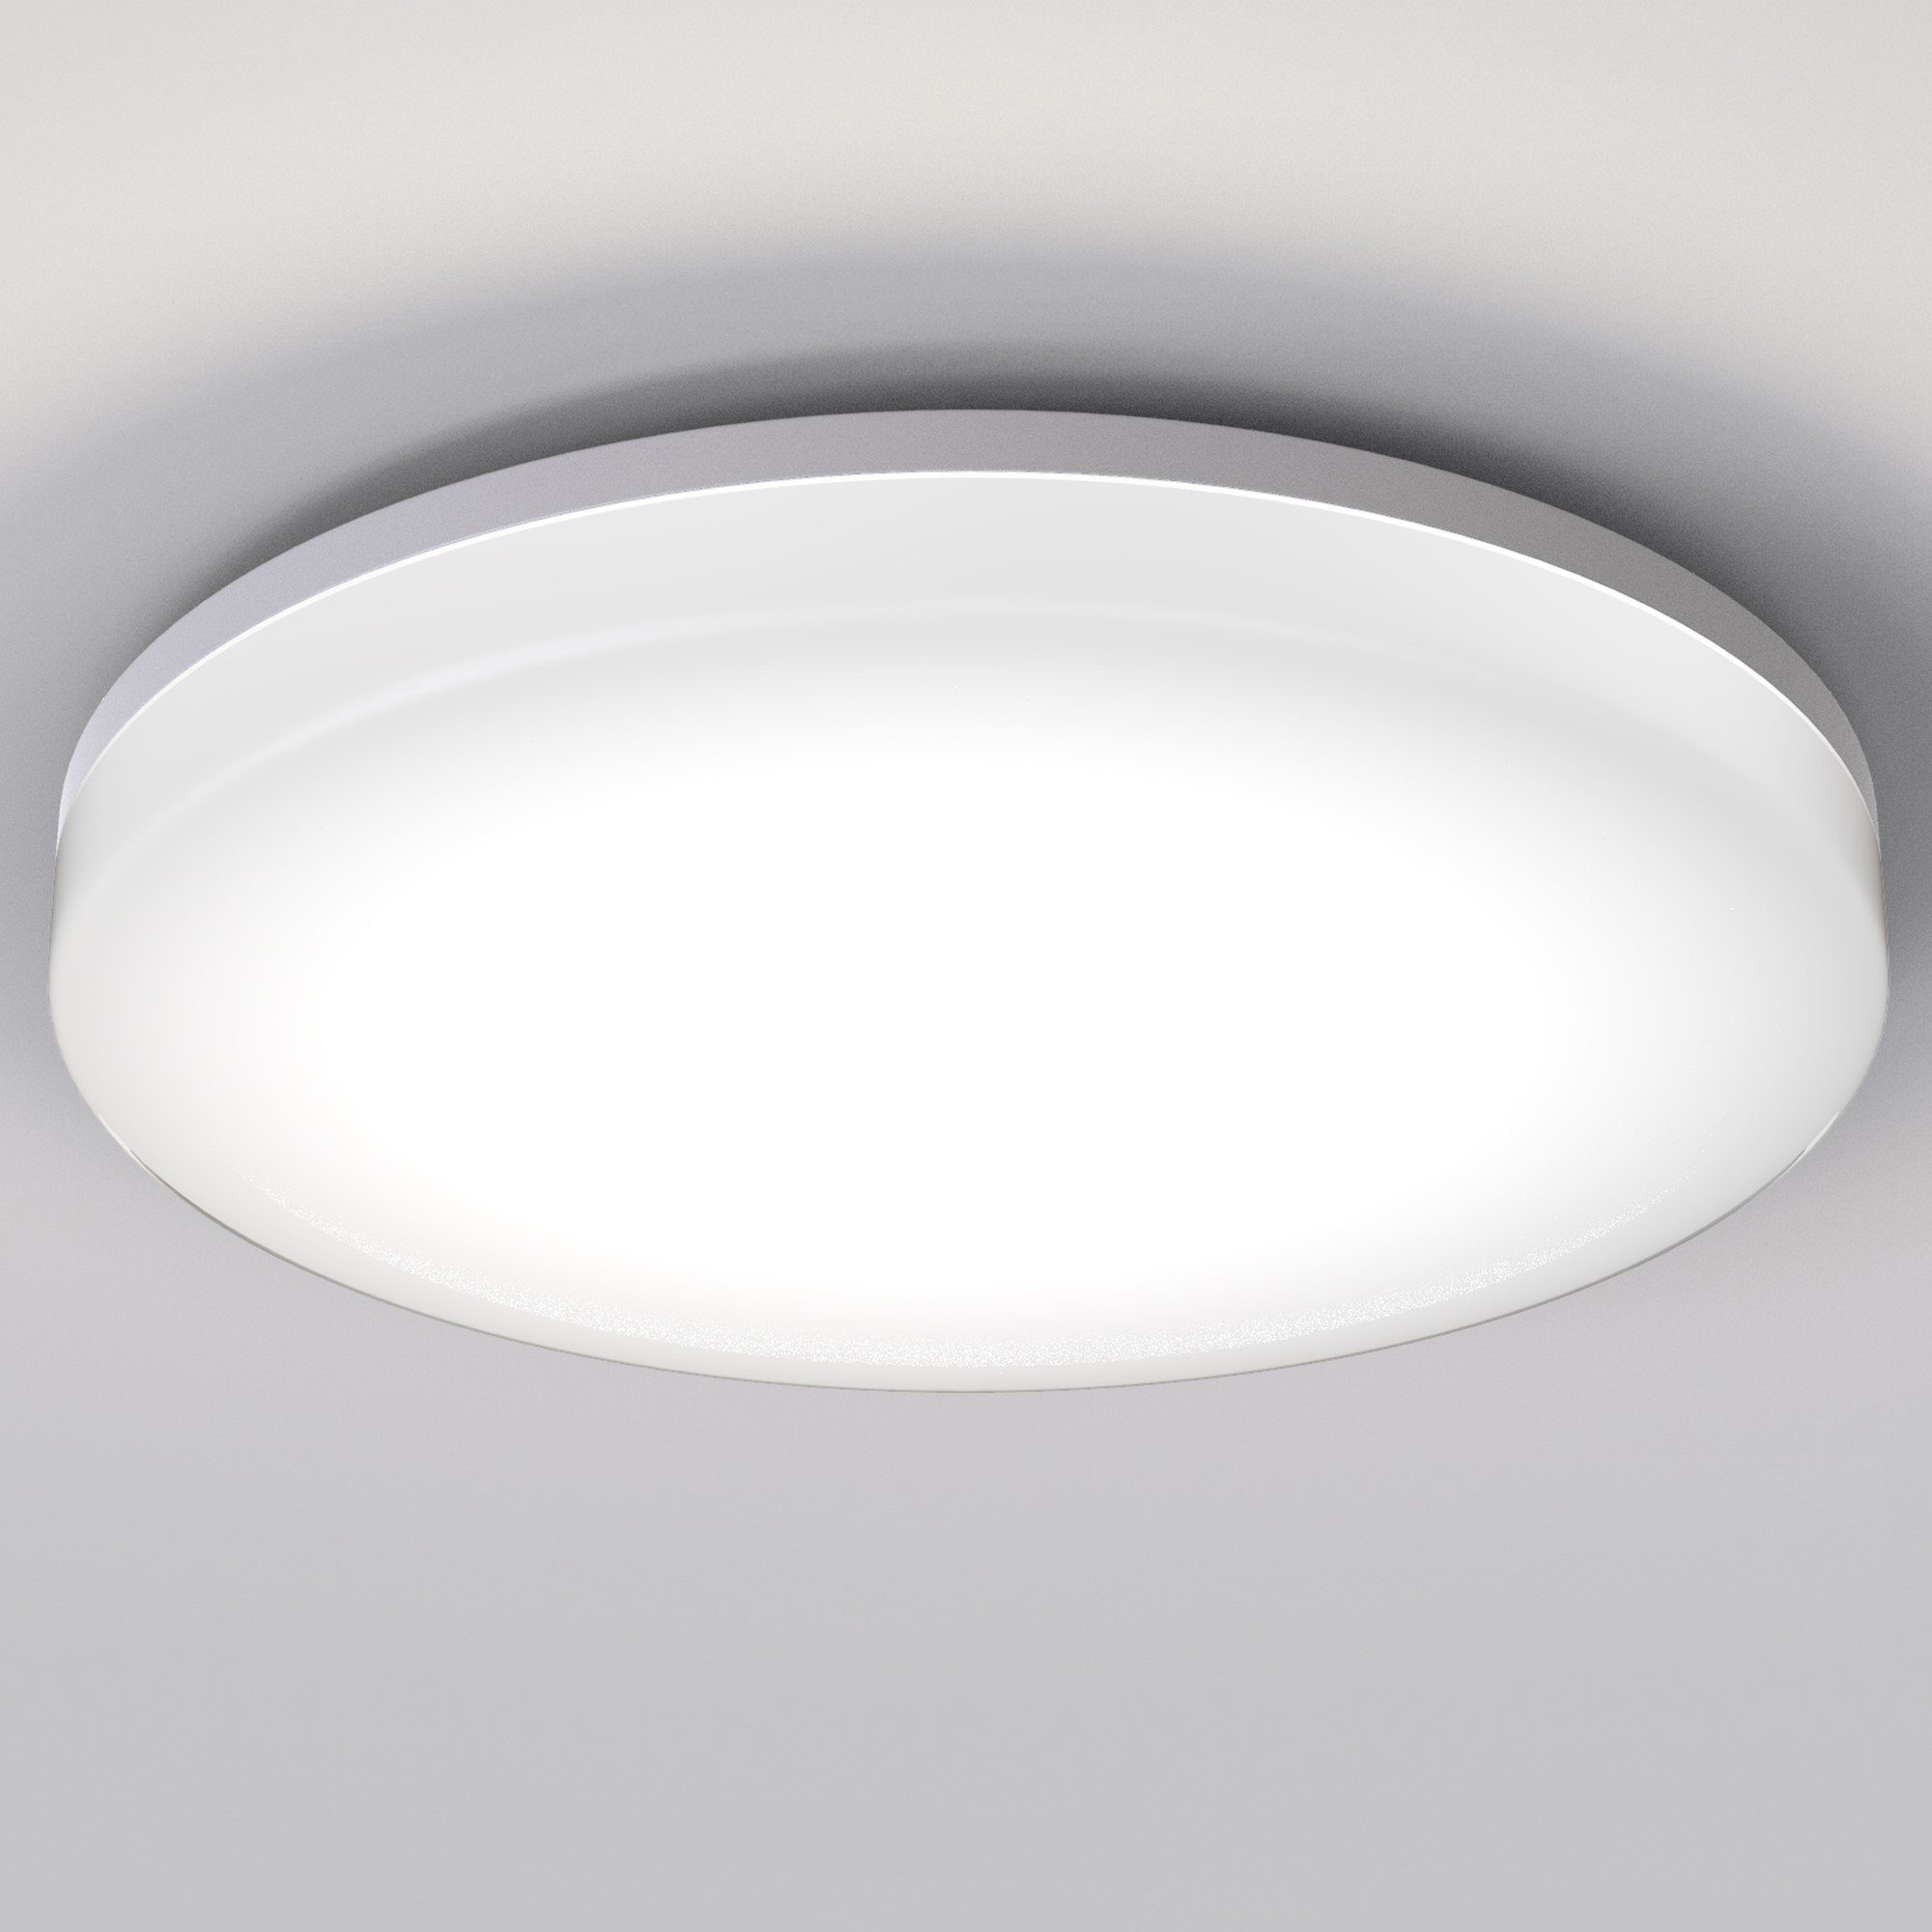 LED Decken Lampe weiß Bewegungs Sensor Gäste Bad Beleuchtung ALU Flur Leuchte 